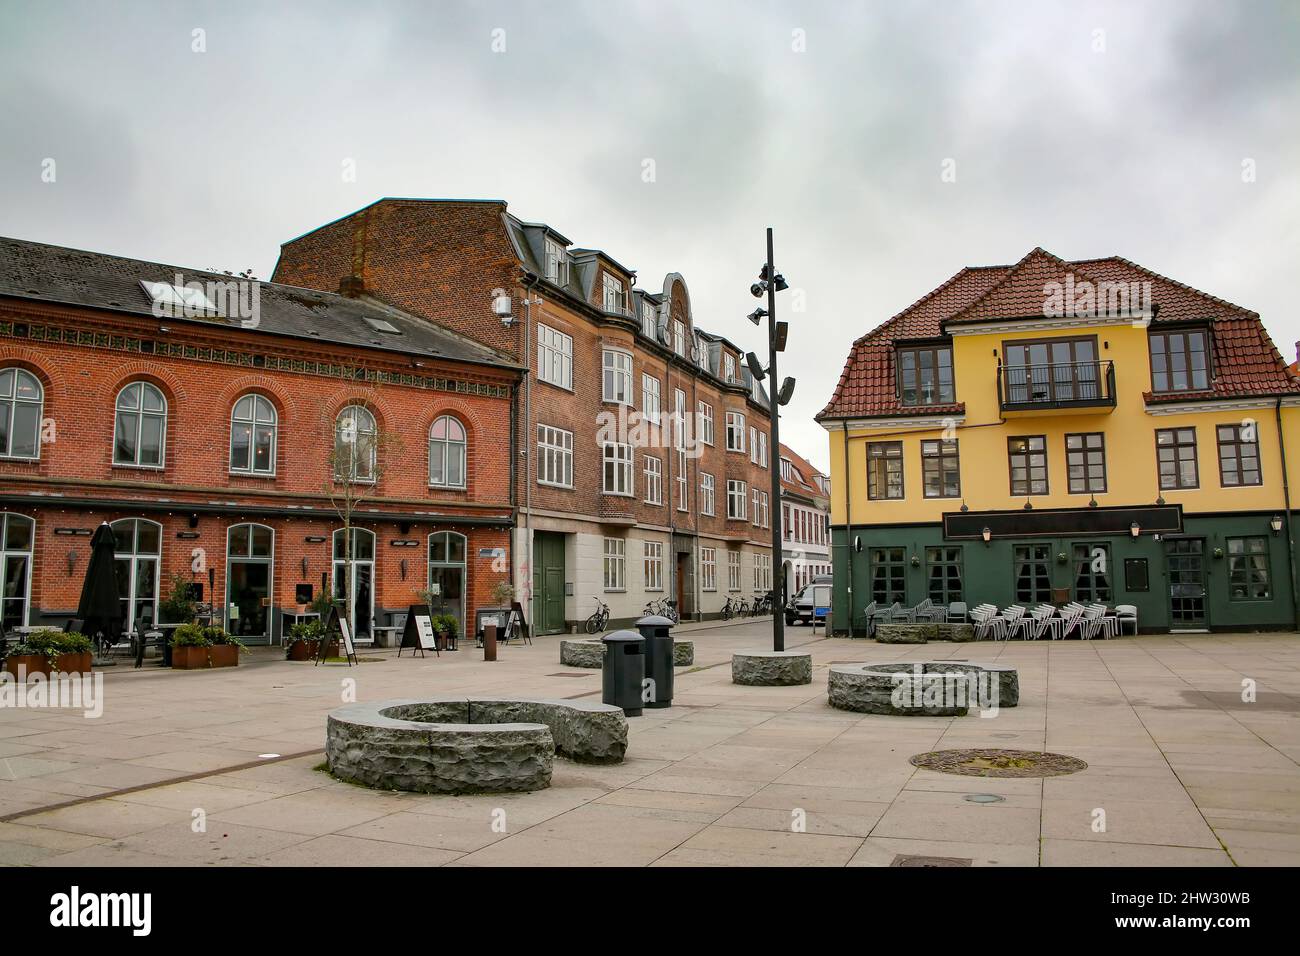 Historische Gebäude mit Geschäften, Bars und Restaurants rund um den Toldbod Plads Platz, der sich im Herzen von Aalborg, Dänemark, befindet. Stockfoto